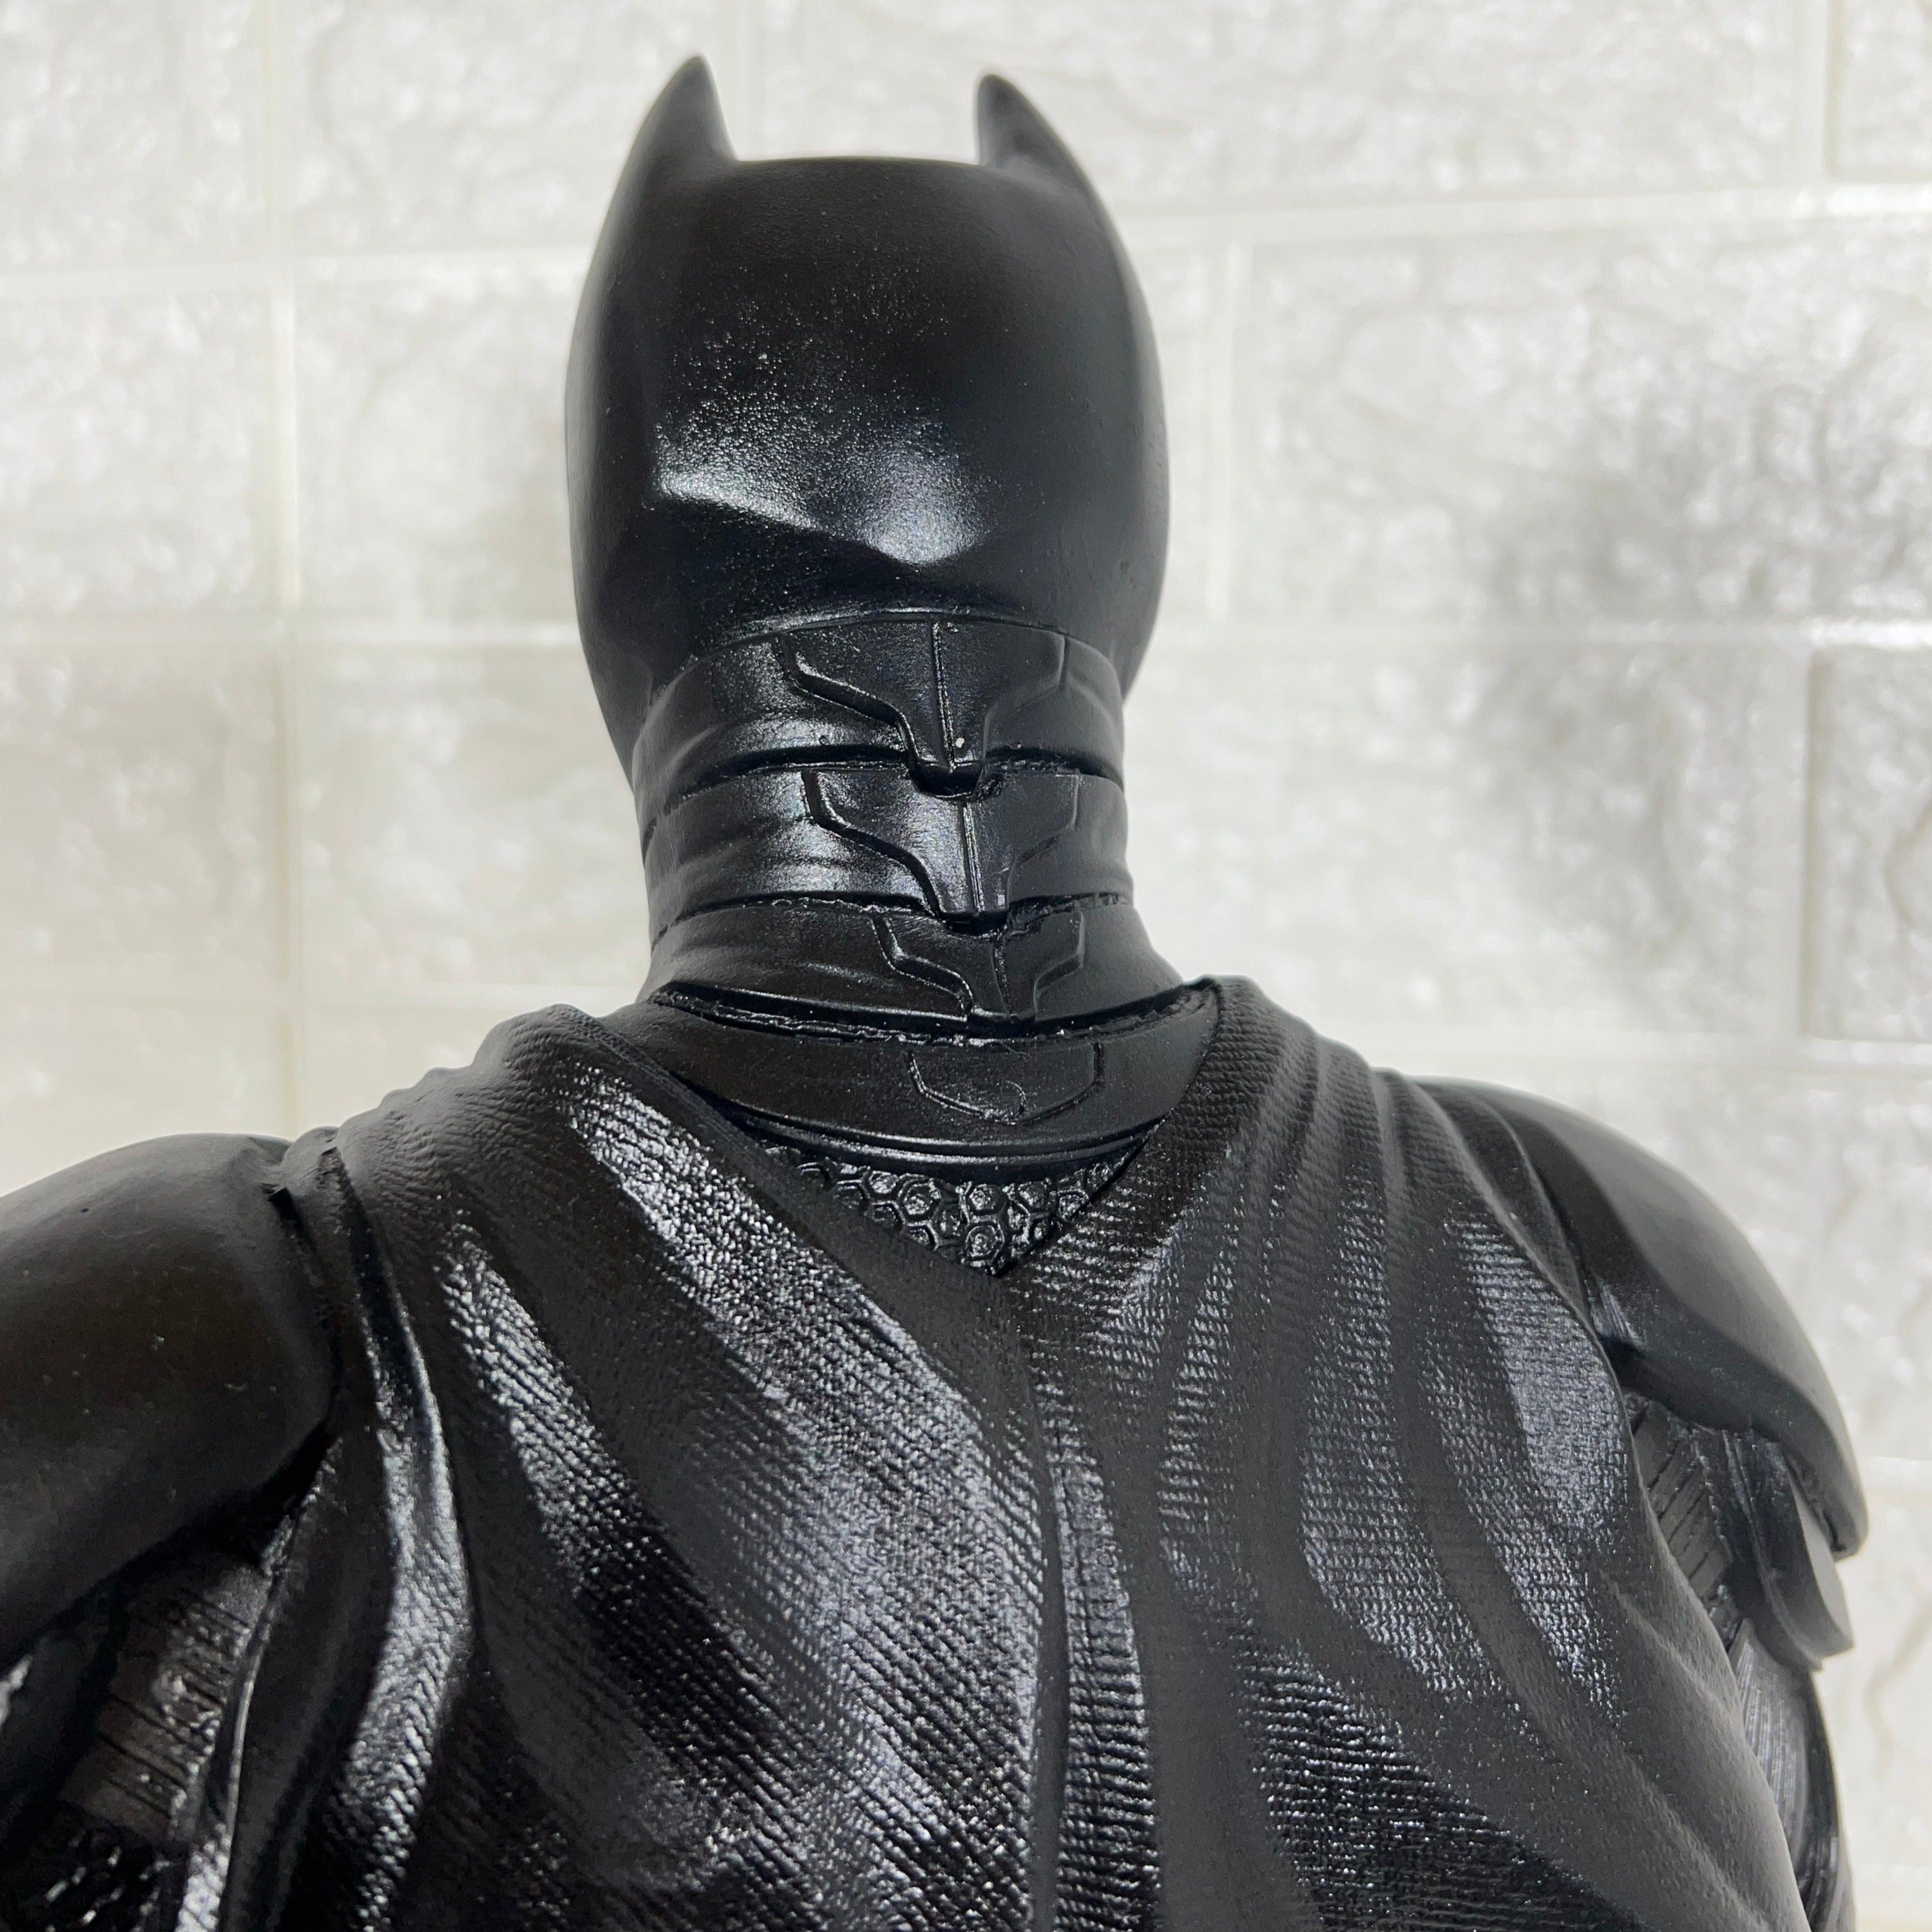 Batman - O Cavaleiro das Trevas 40cm